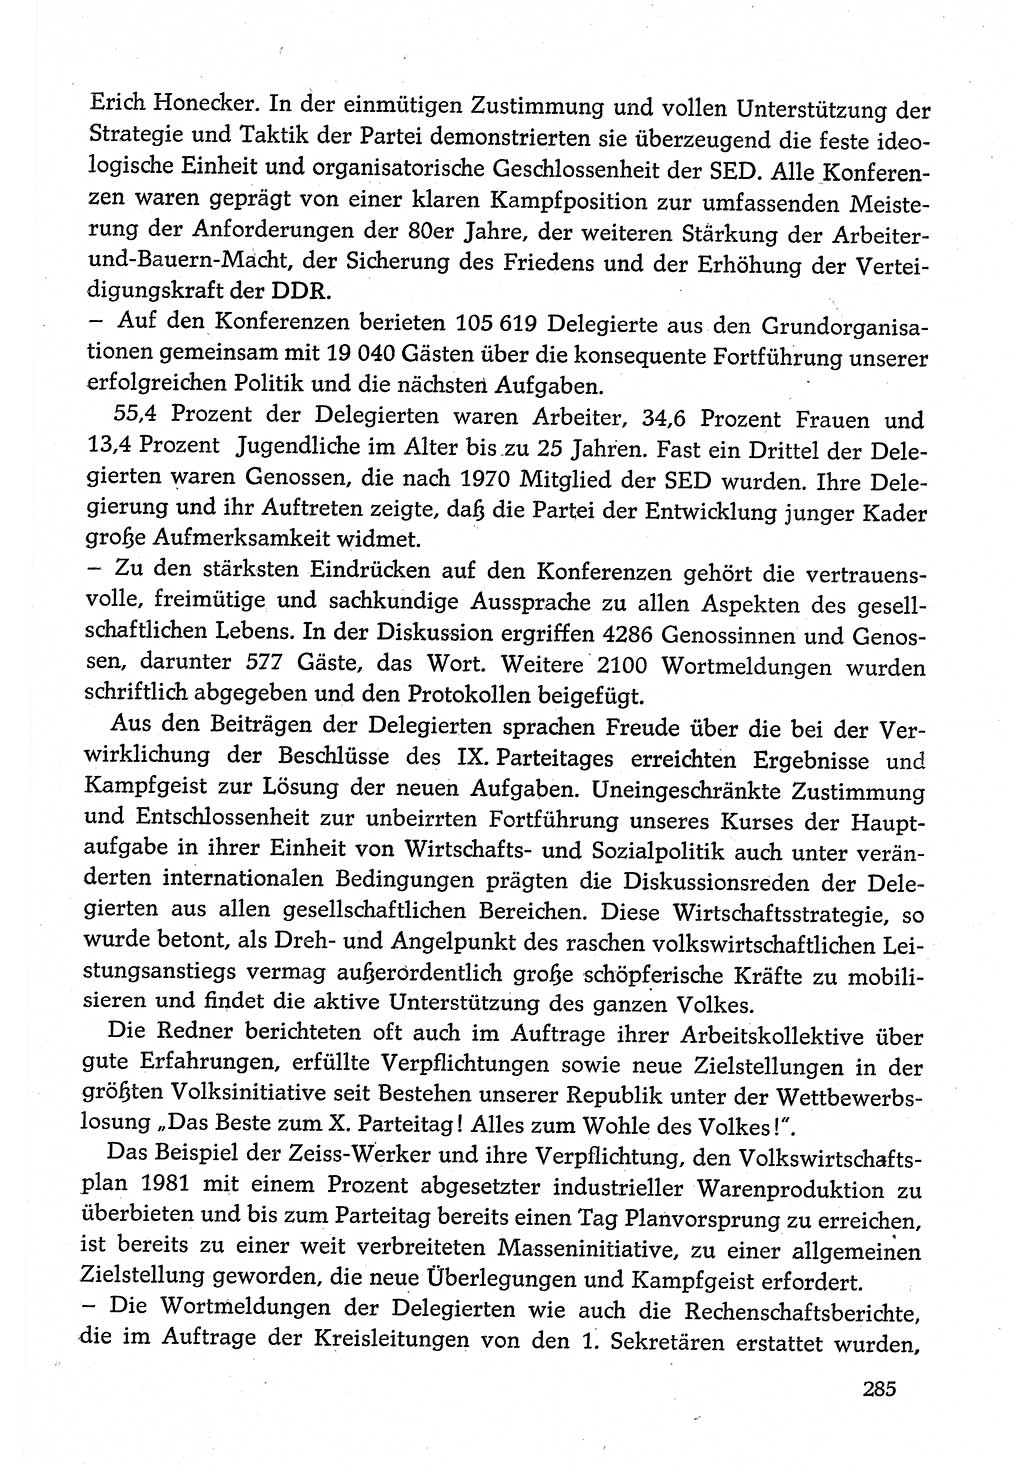 Dokumente der Sozialistischen Einheitspartei Deutschlands (SED) [Deutsche Demokratische Republik (DDR)] 1980-1981, Seite 285 (Dok. SED DDR 1980-1981, S. 285)